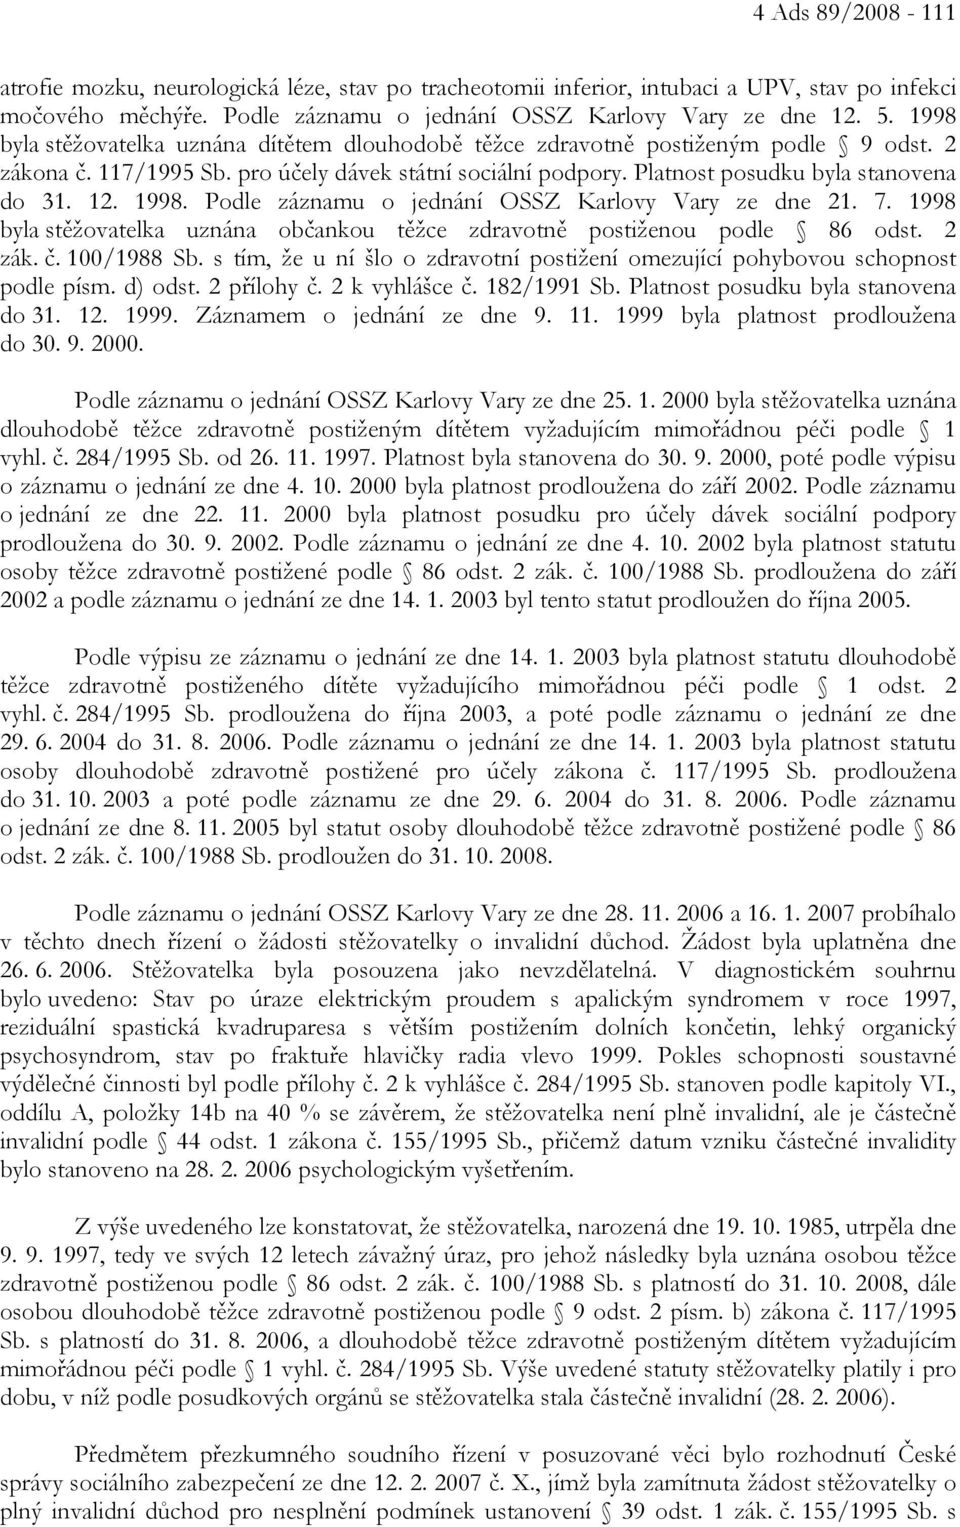 1998. Podle záznamu o jednání OSSZ Karlovy Vary ze dne 21. 7. 1998 byla stěžovatelka uznána občankou těžce zdravotně postiženou podle 86 odst. 2 zák. č. 100/1988 Sb.